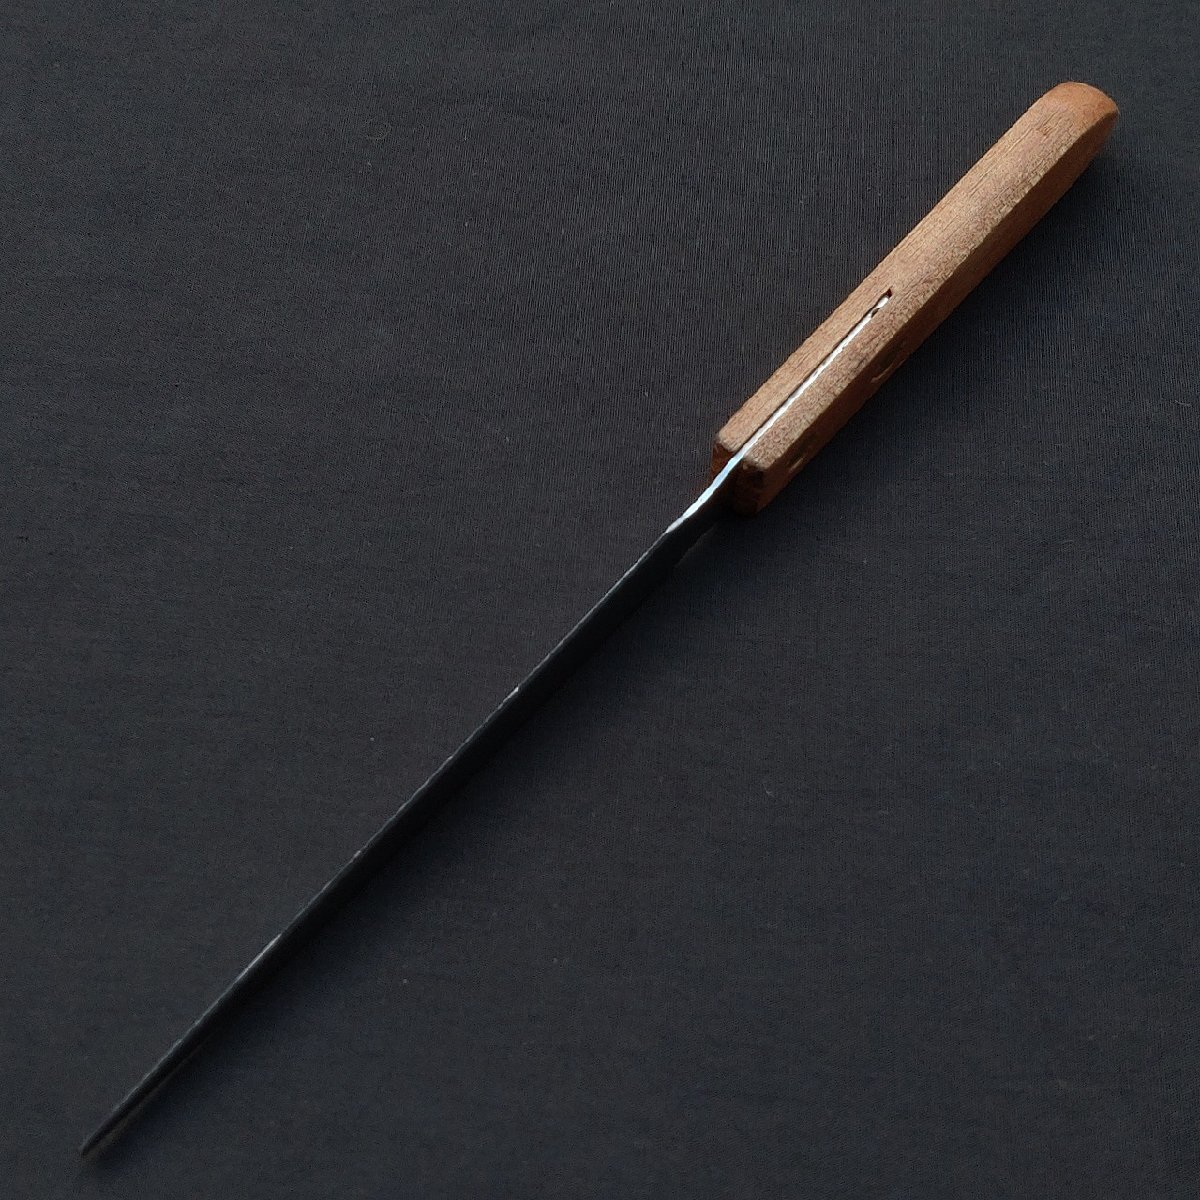  нож для бумаги общая длина примерно 218. лезвие длина примерно 120. письмо устройство открывания бумага нож канцелярские товары [9768]